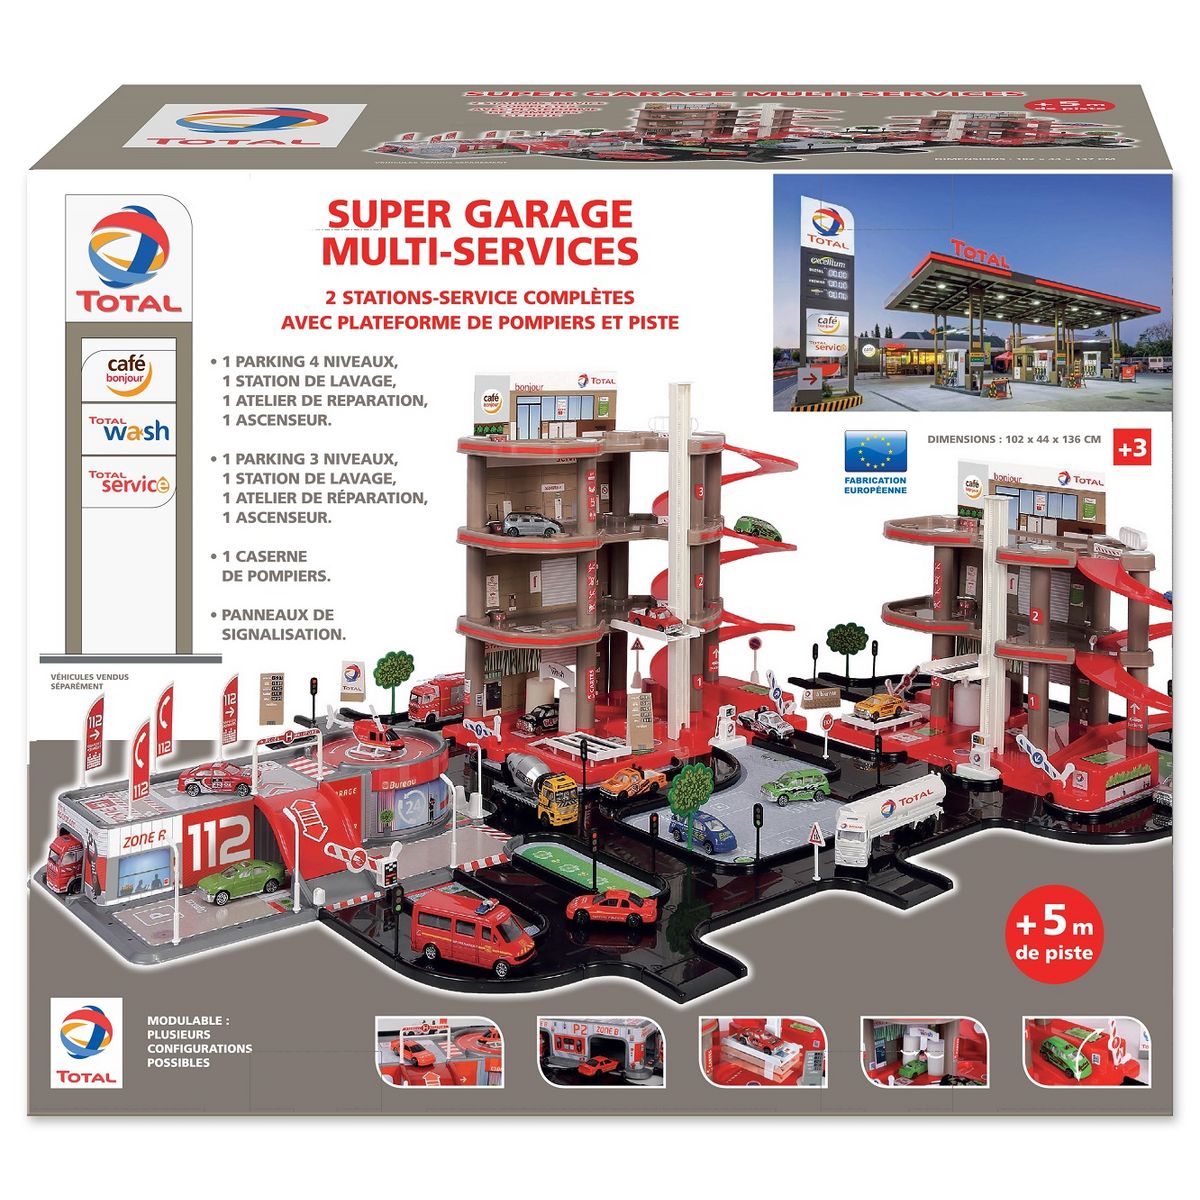 Garage DM: centre multiservice pour votre auto à St-Césaire